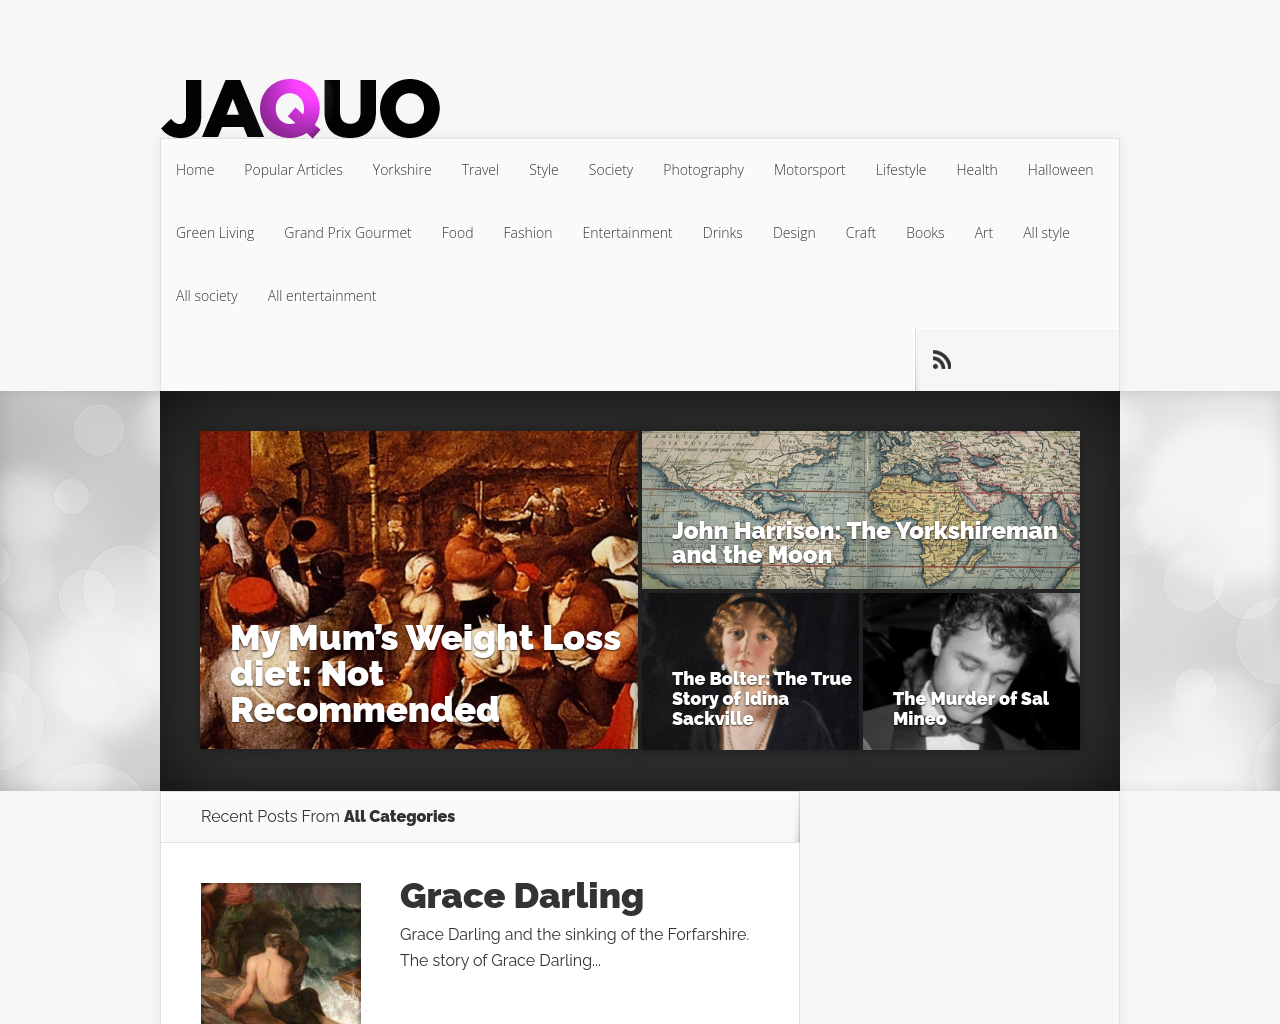 jaquo.com